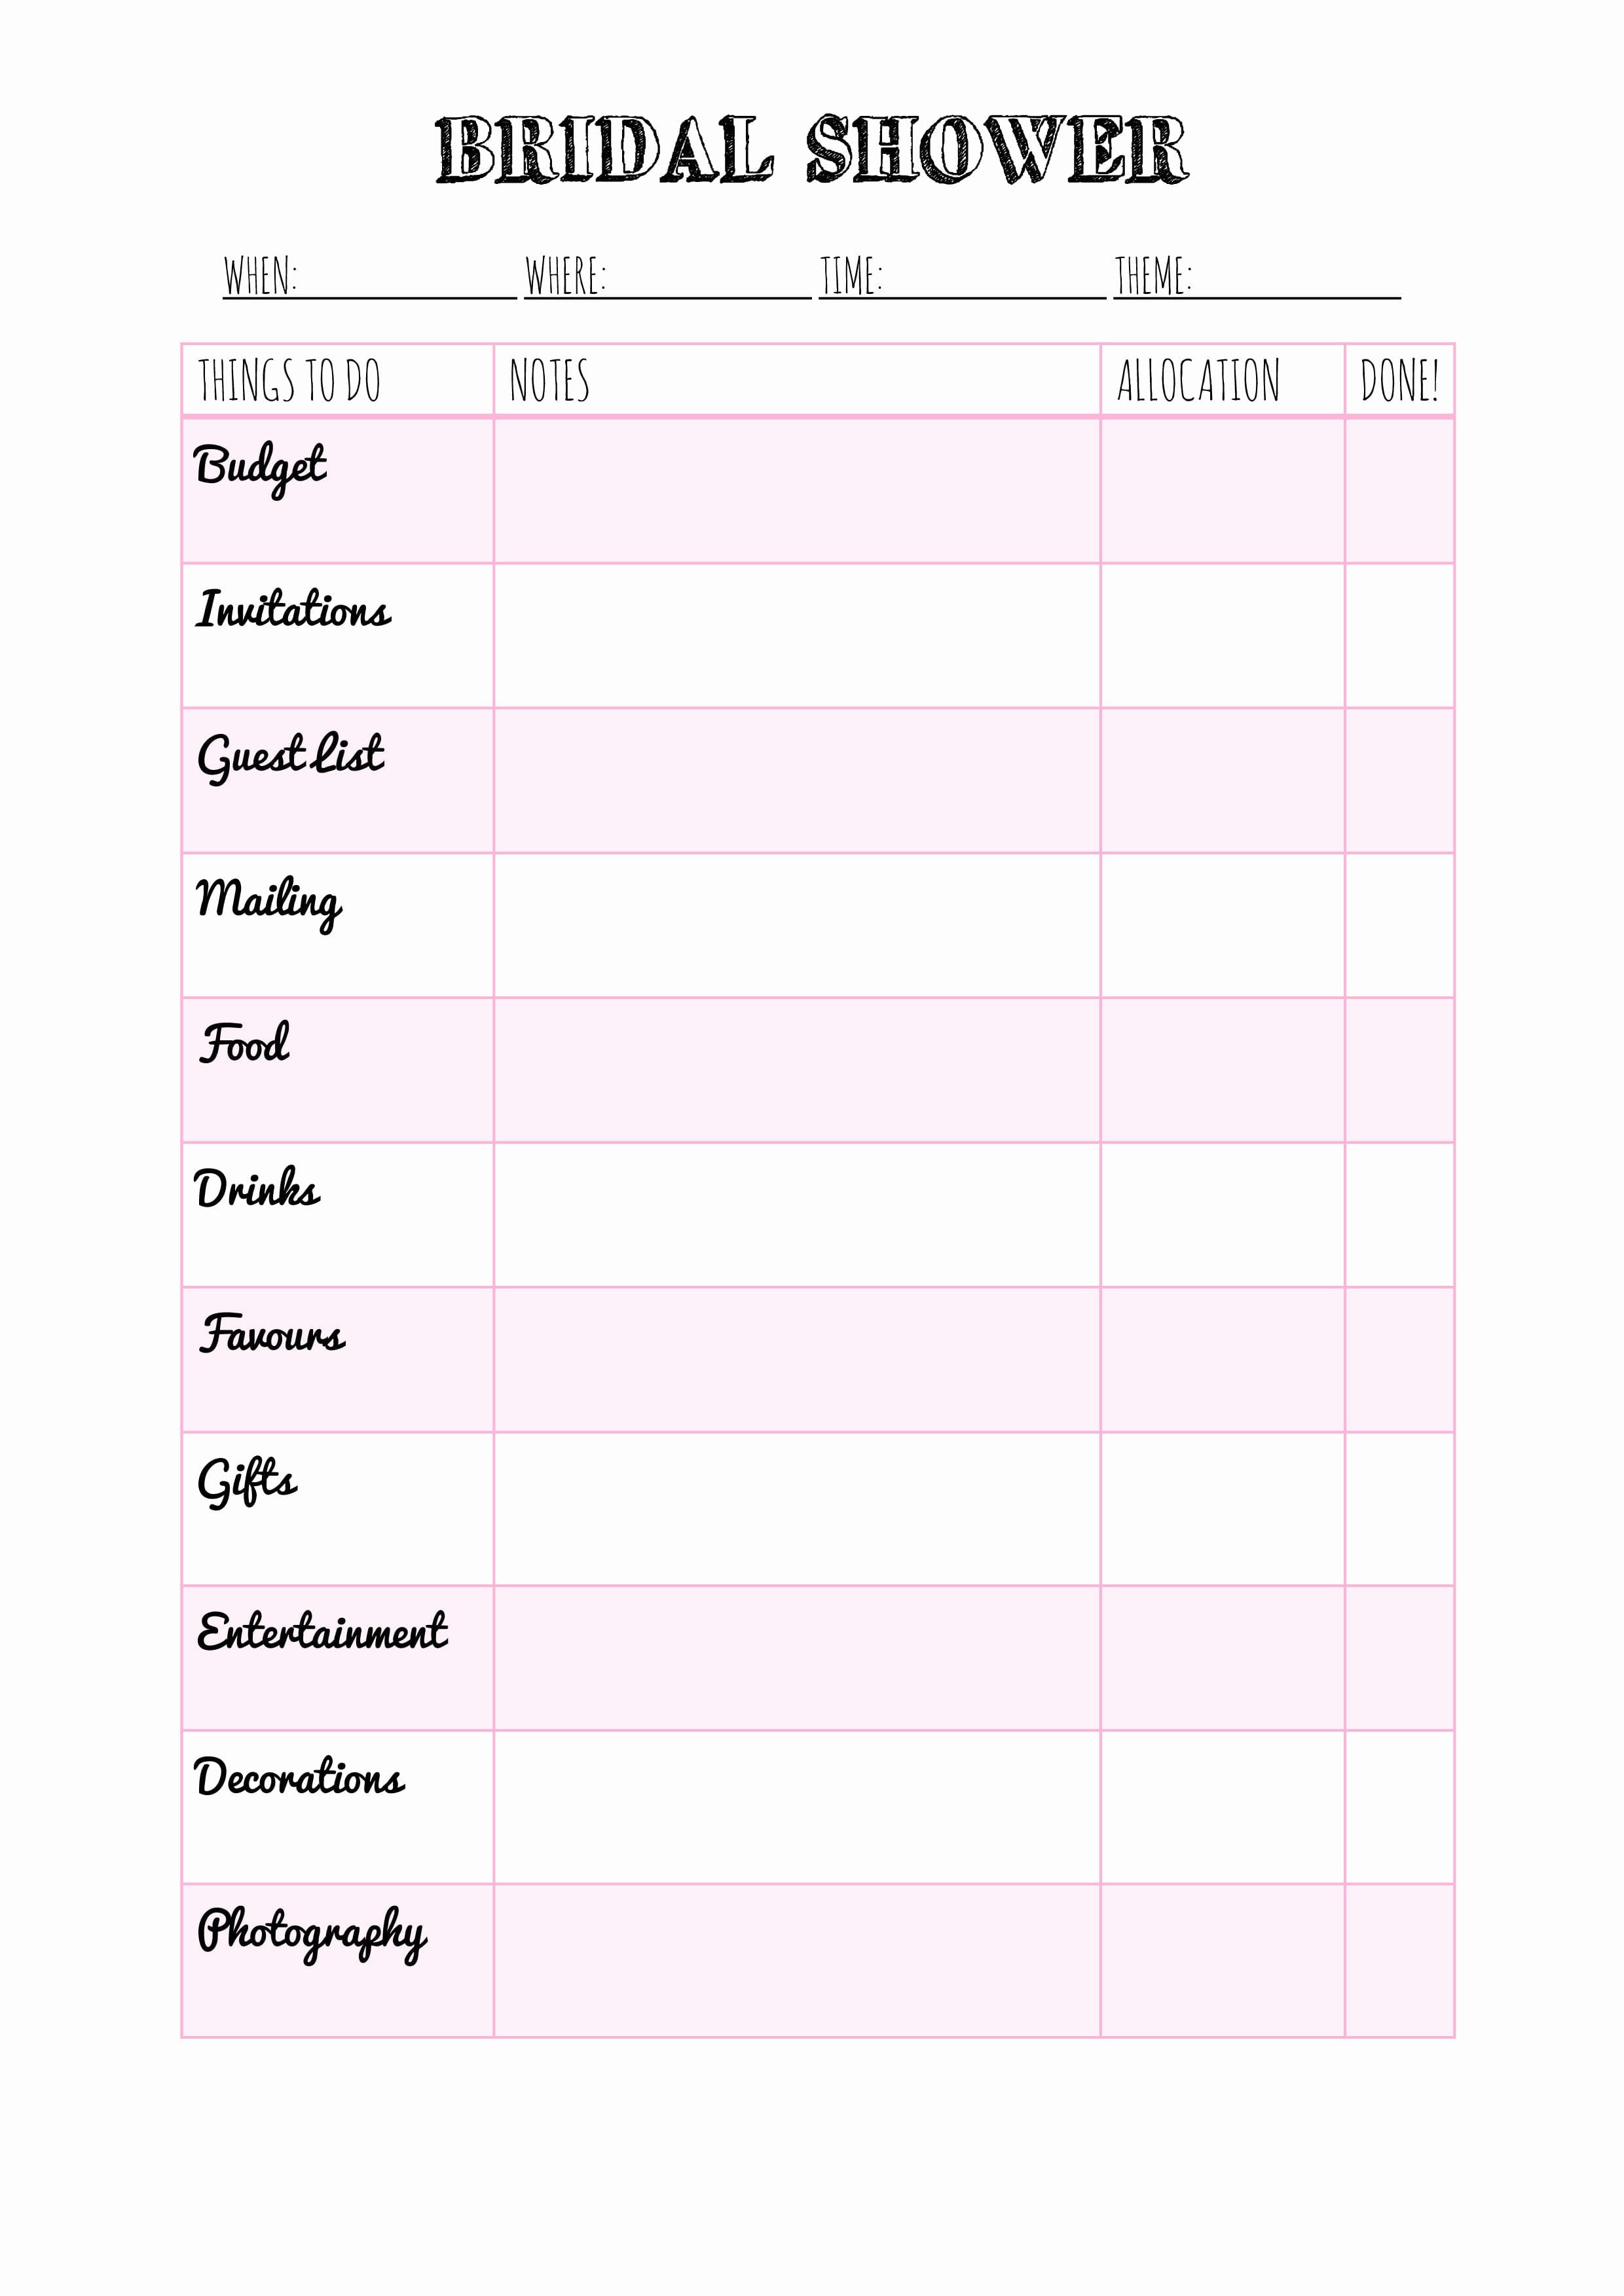 Bridal Shower Planning Checklist Excel BEST HOME DESIGN IDEAS